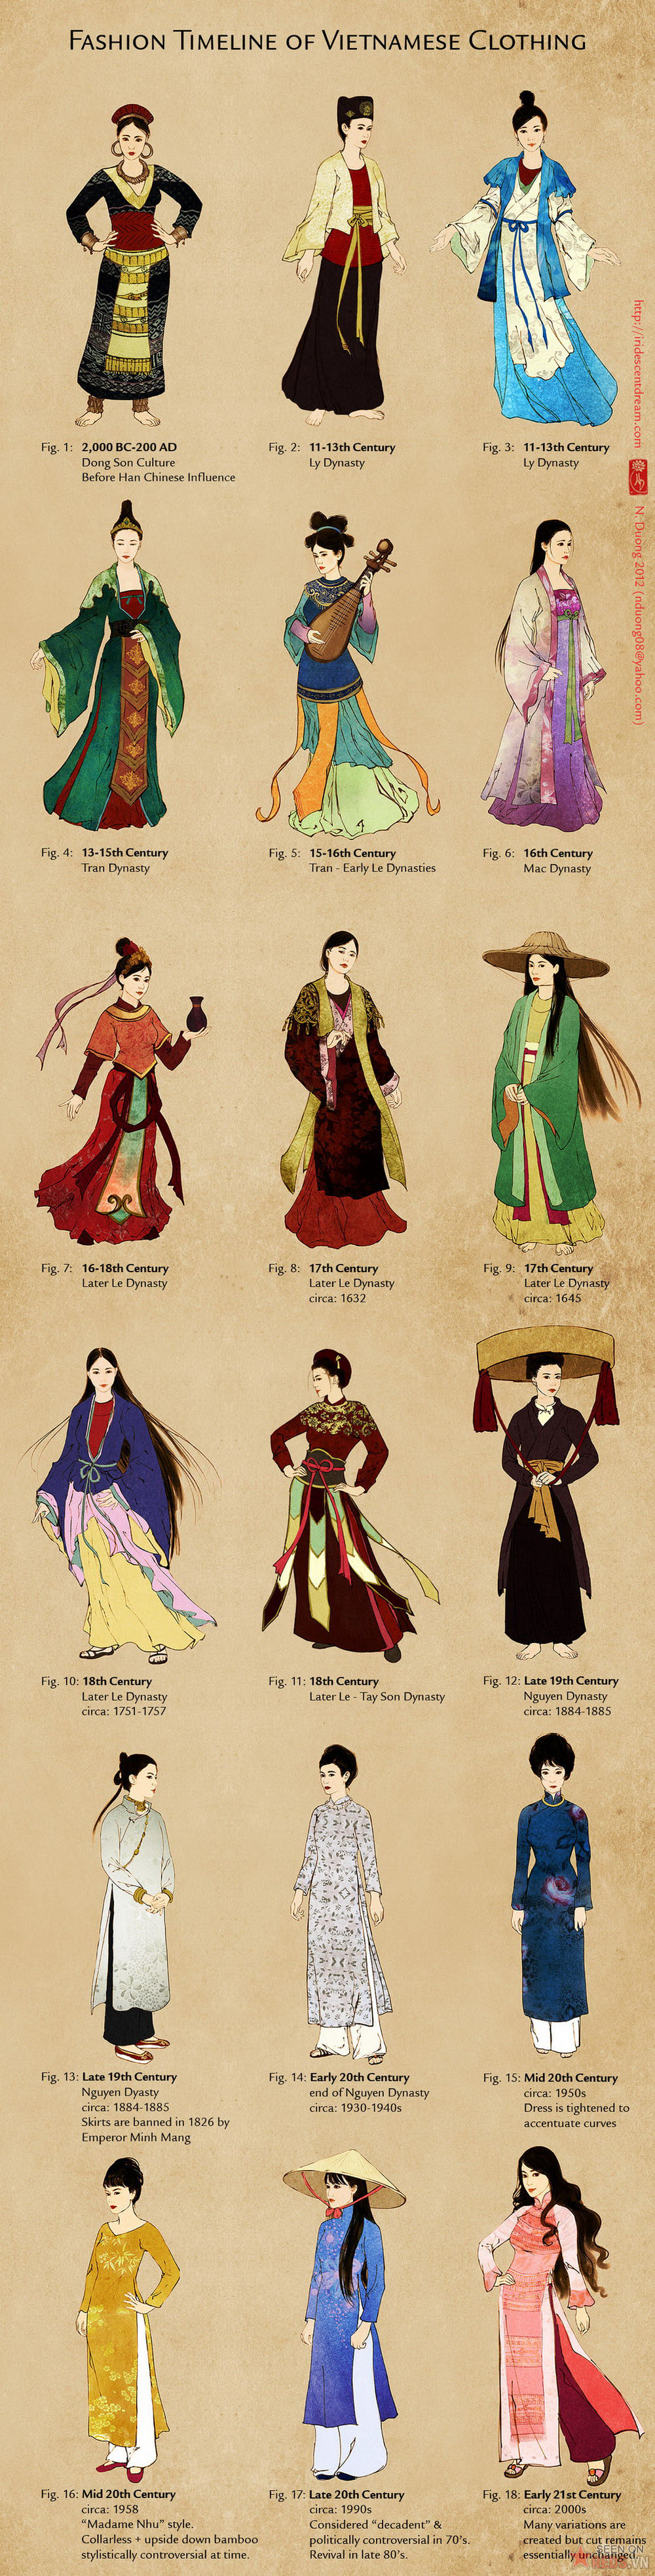 tapchidangnho trang phuc lich su viet nam 03 - Trang phục nữ Việt Nam xưa và nay